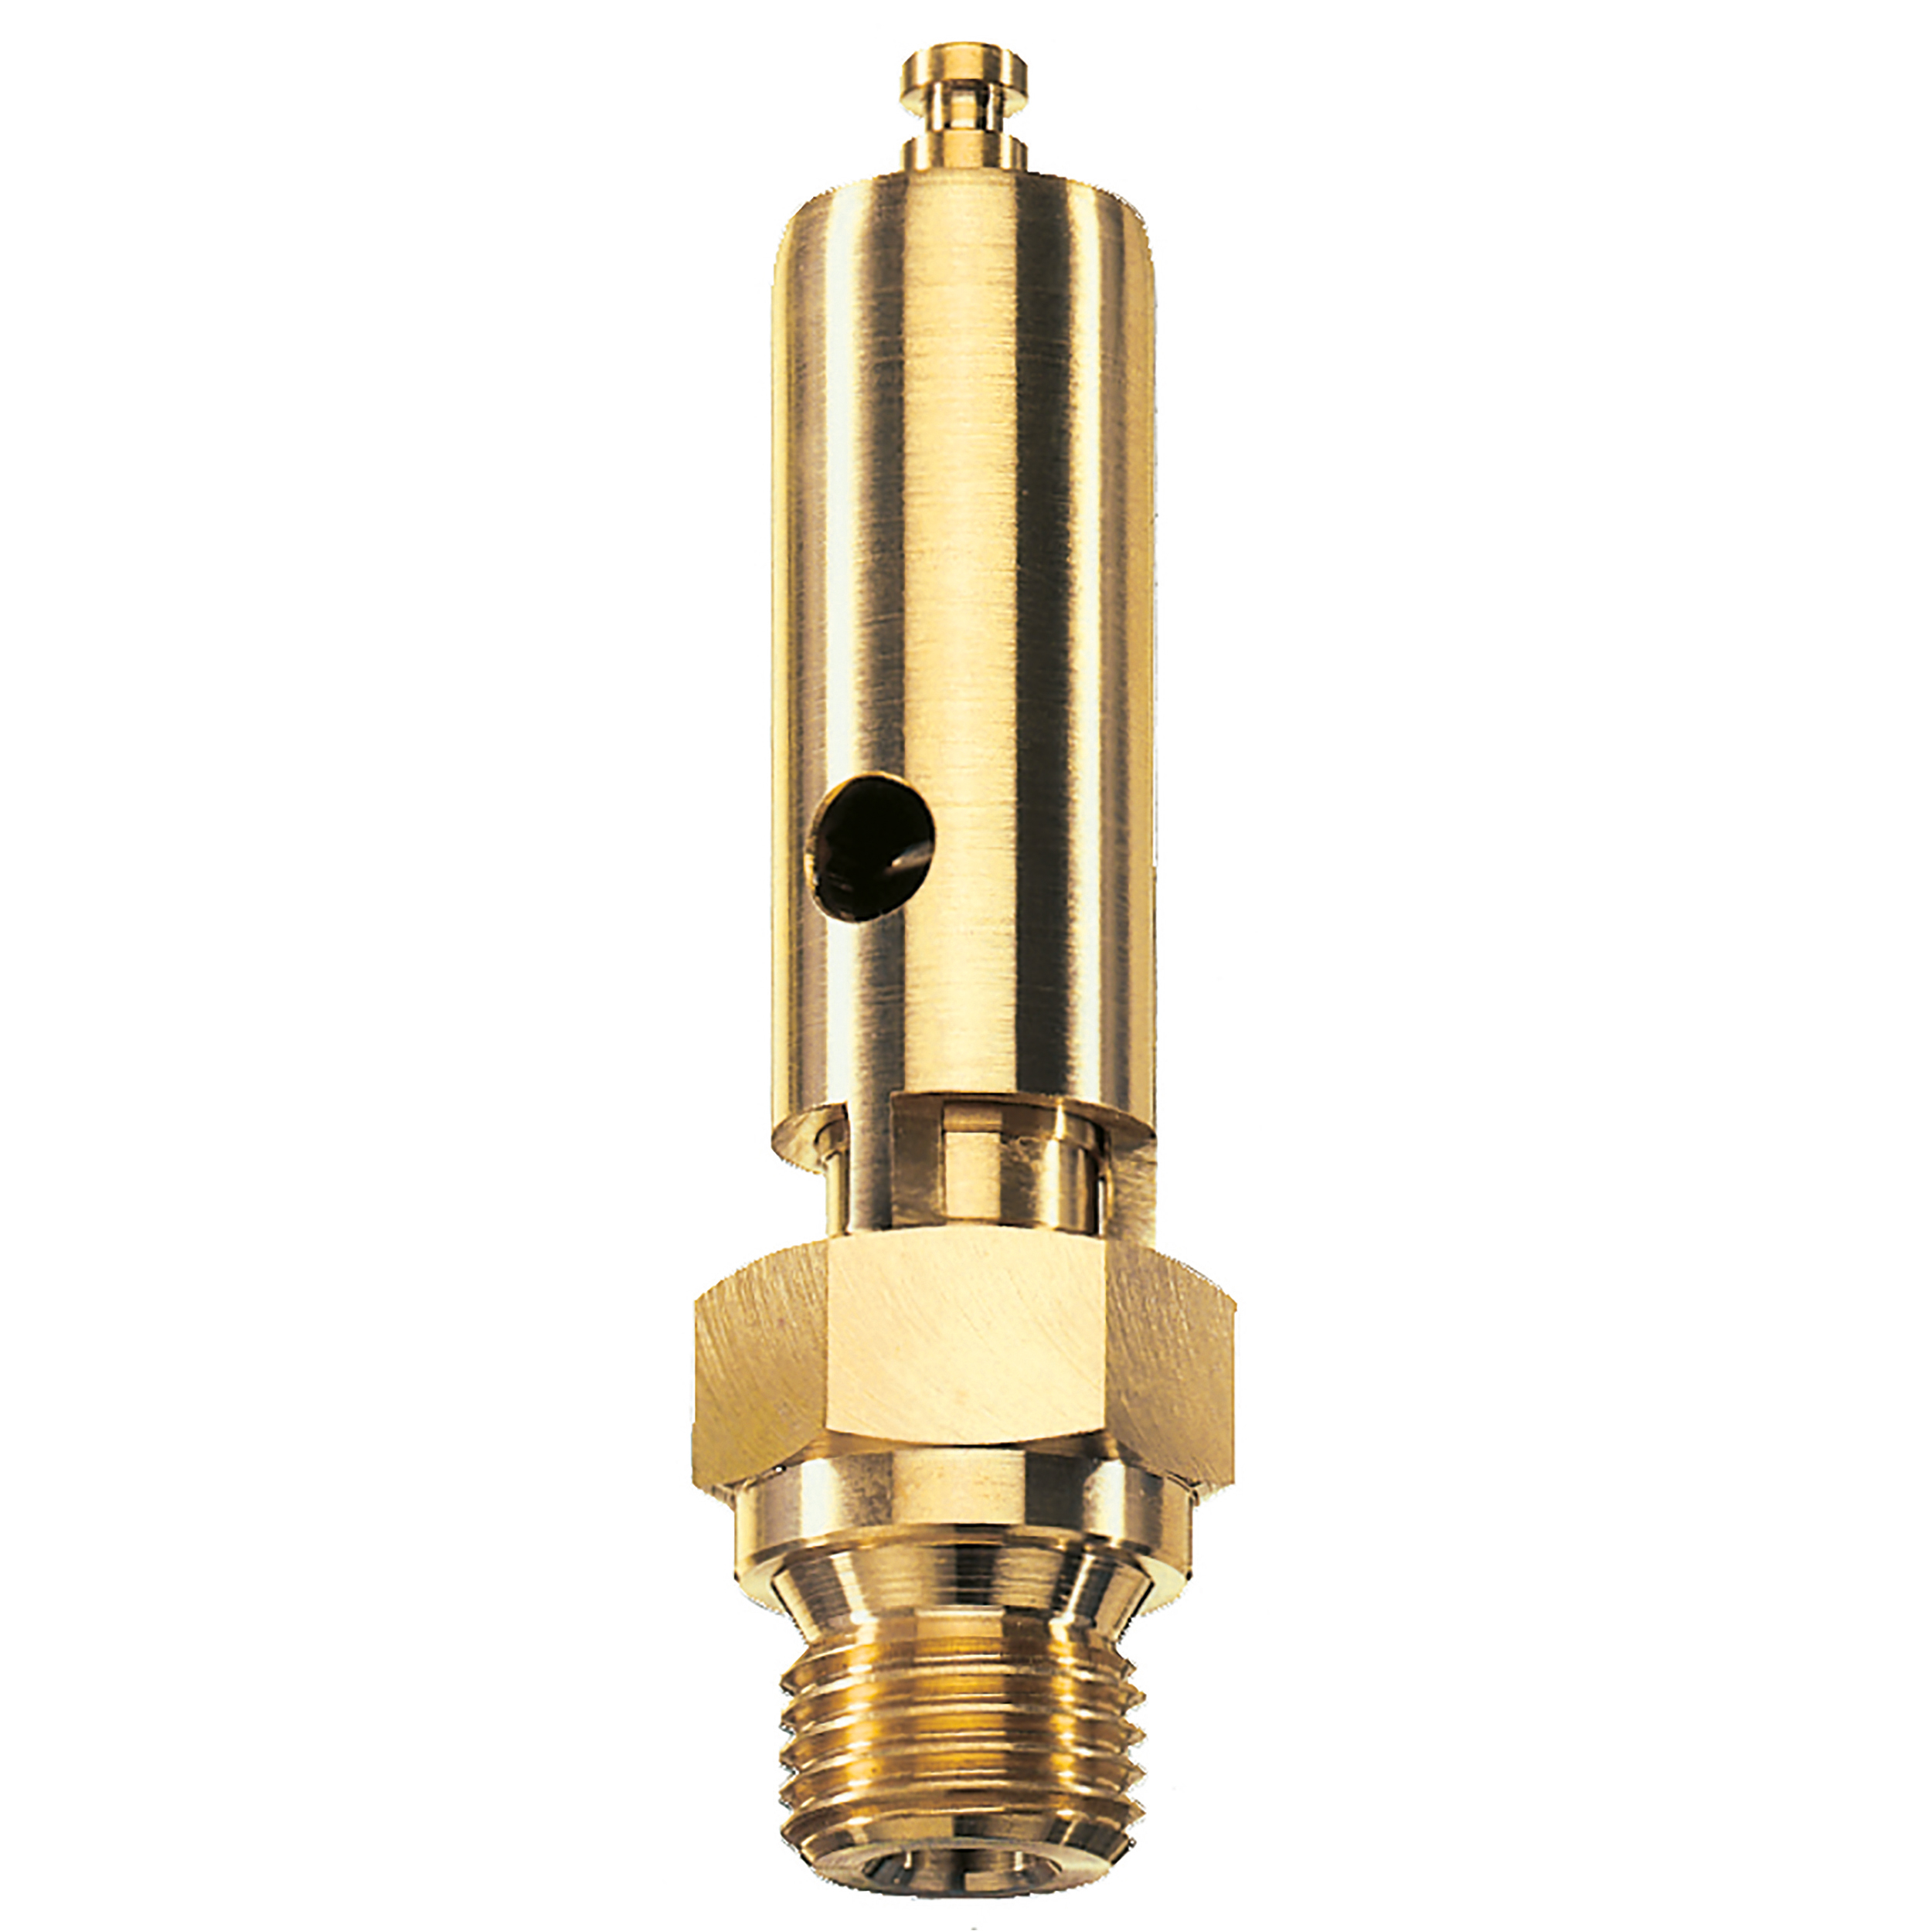 Savety valve component tested DN 6, G¼, L: 60 mm, seal: FKM, set pressure: 9.7 bar (140,7 psi), TÜV approval